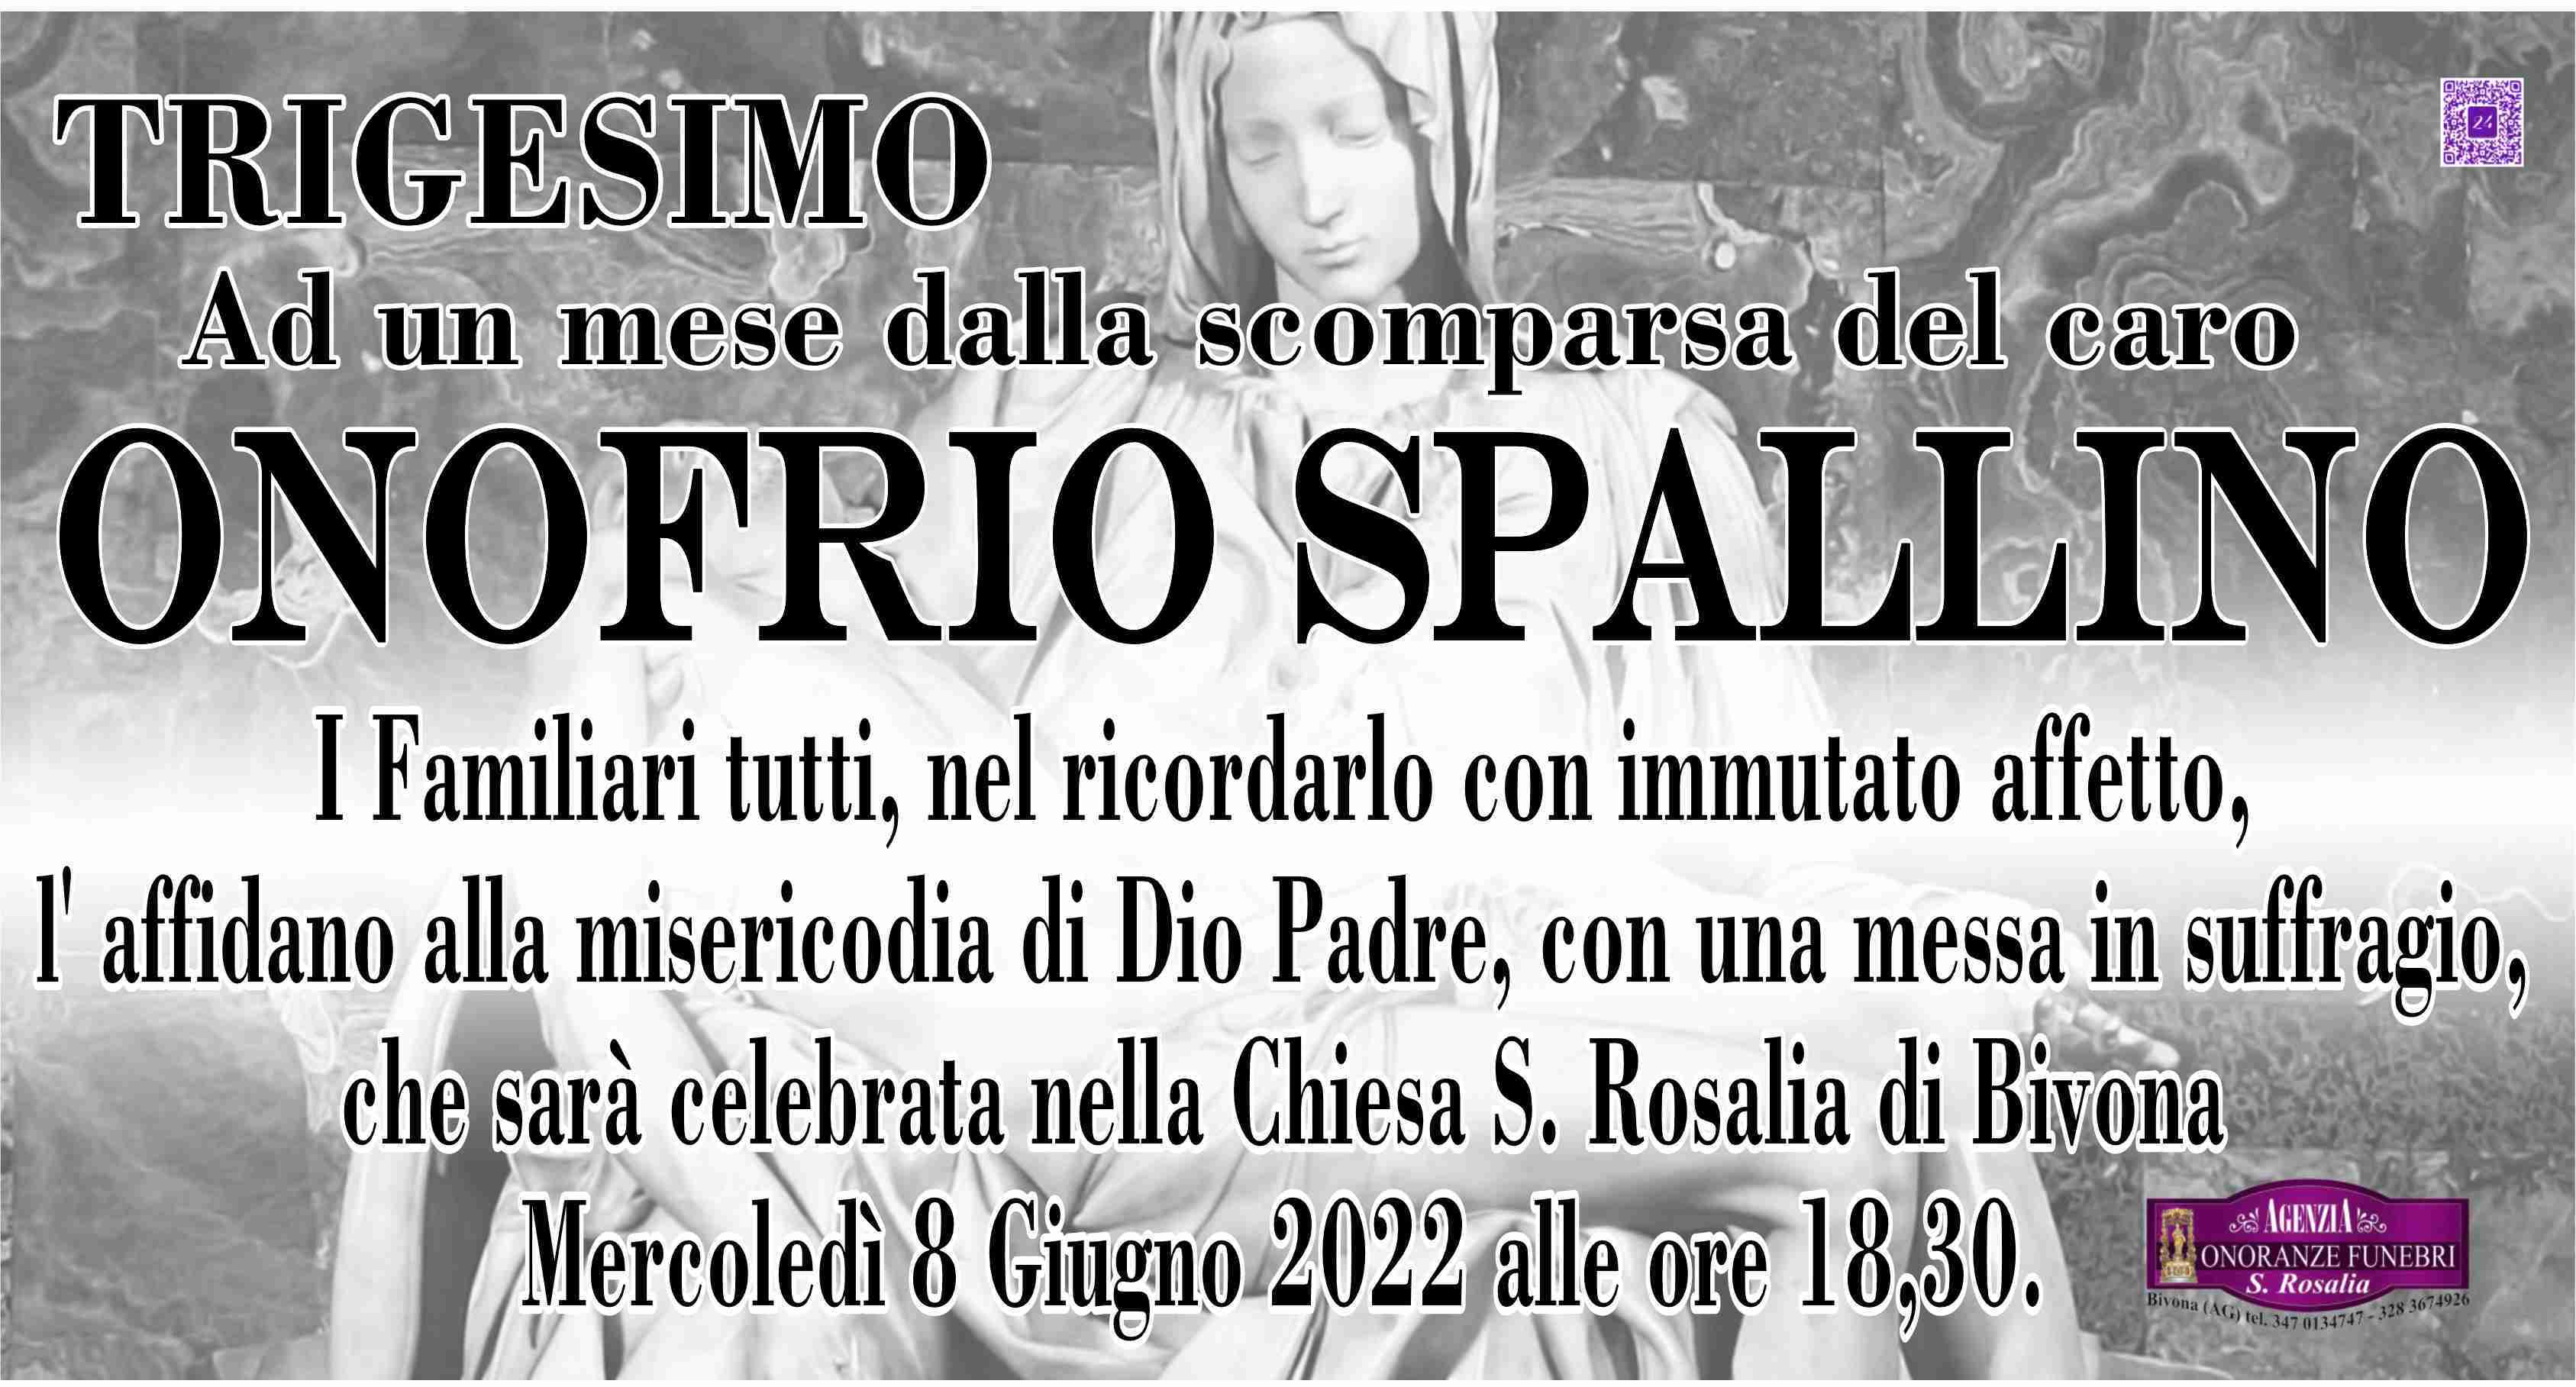 Onofrio Spallino